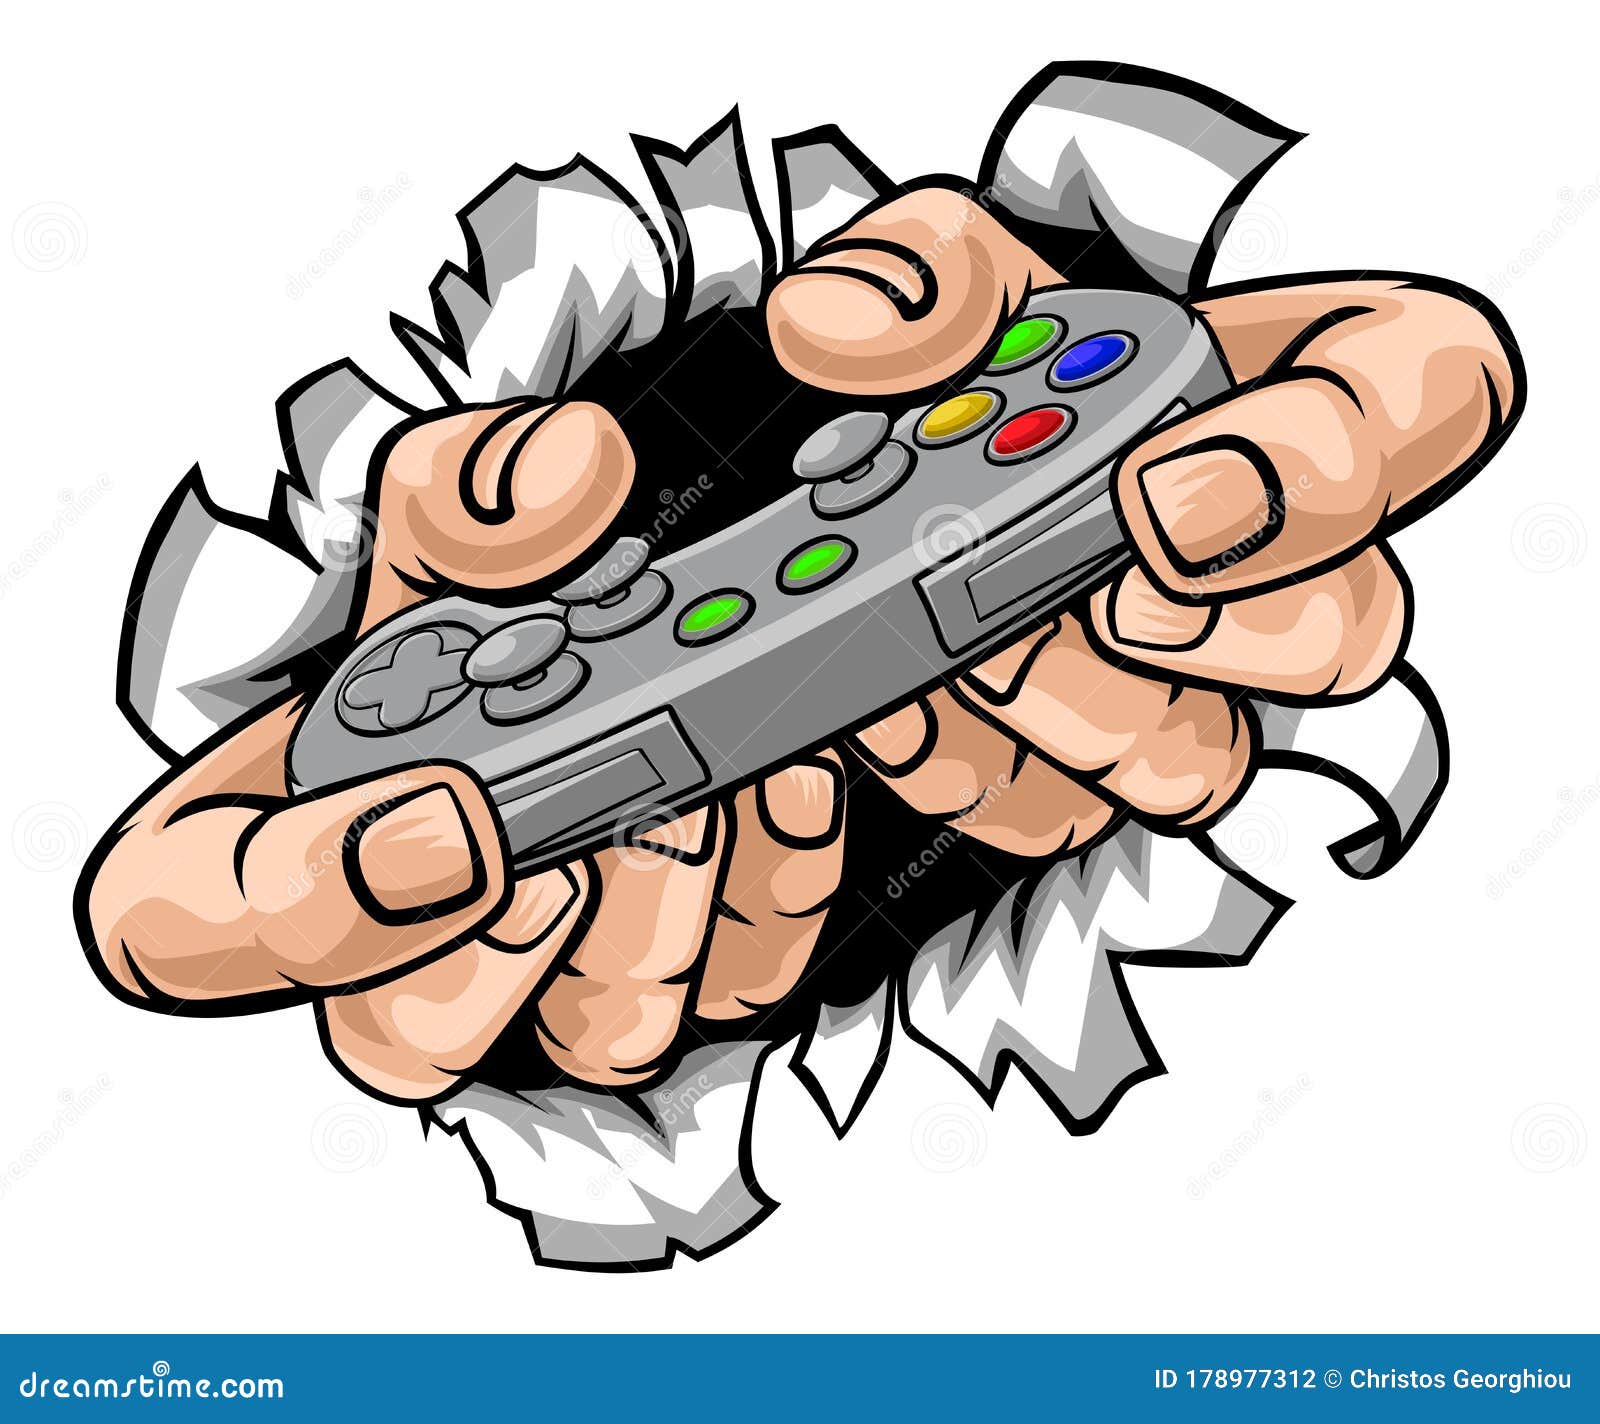 Jogos para celular. mãos humanas de desenho animado segurando smartphone  com controladores de gamepad 3d render ilustração